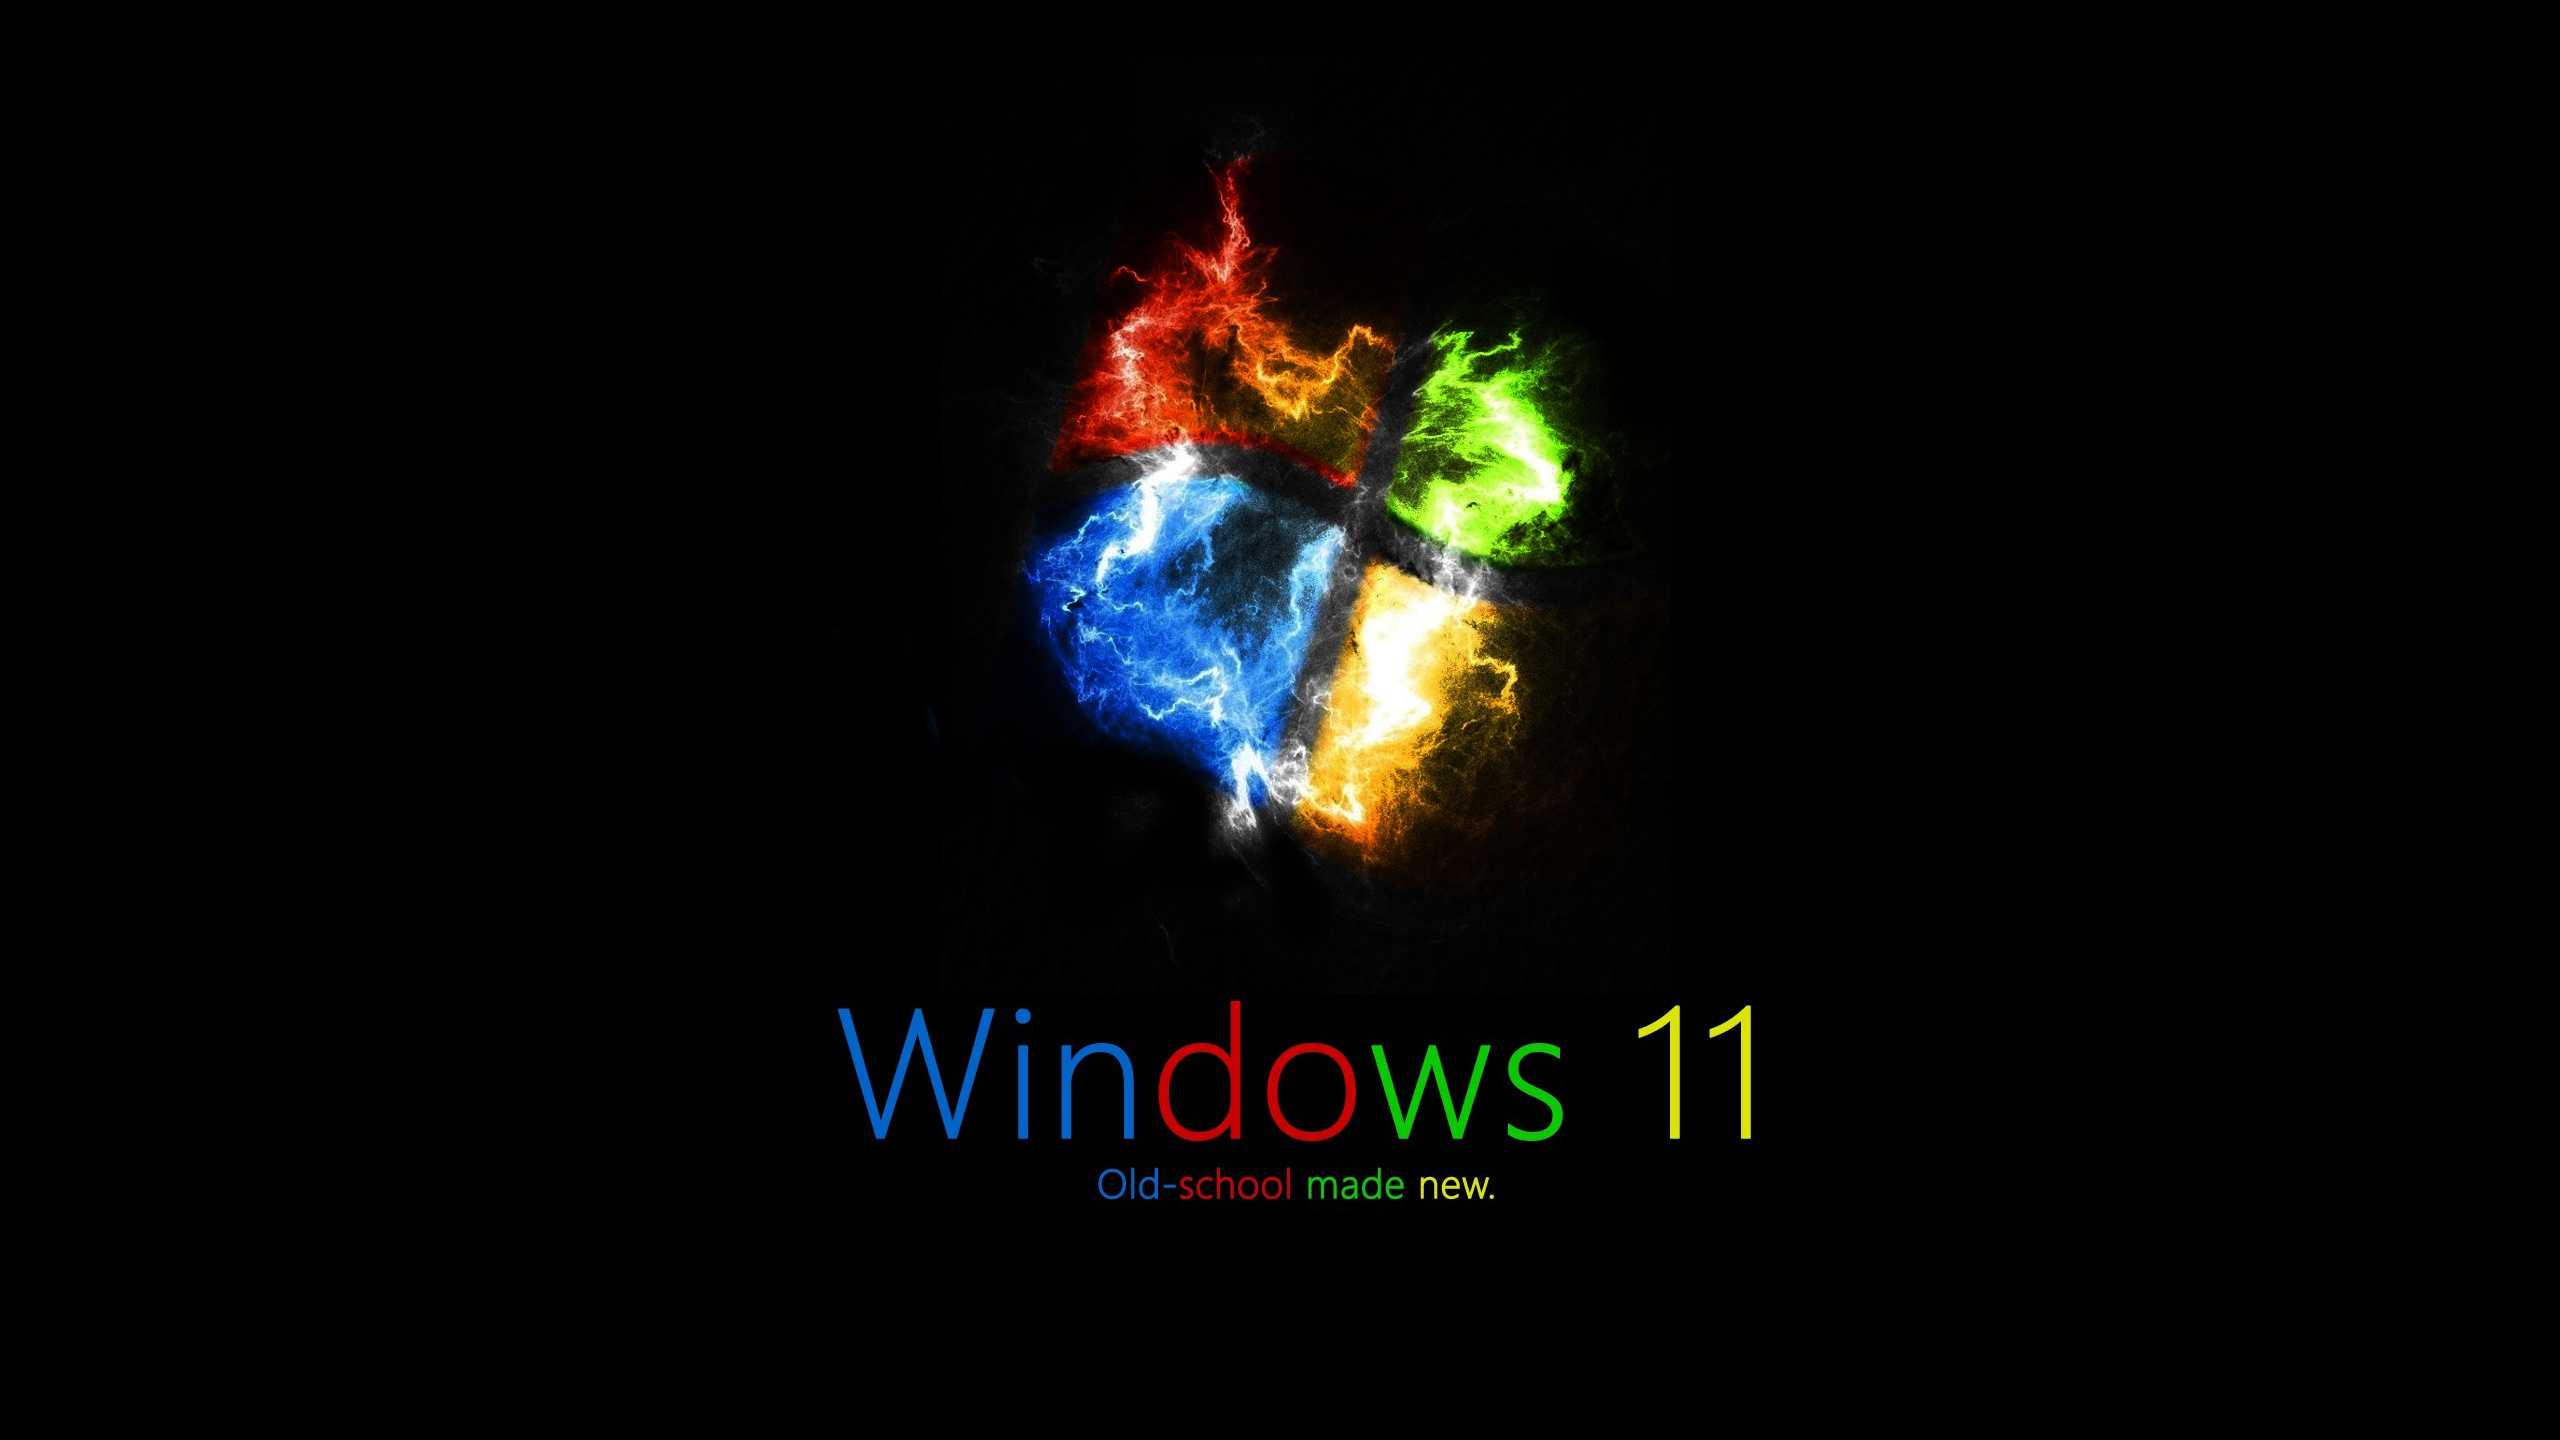 Windows 11 HD Wallpaper - IXpaper